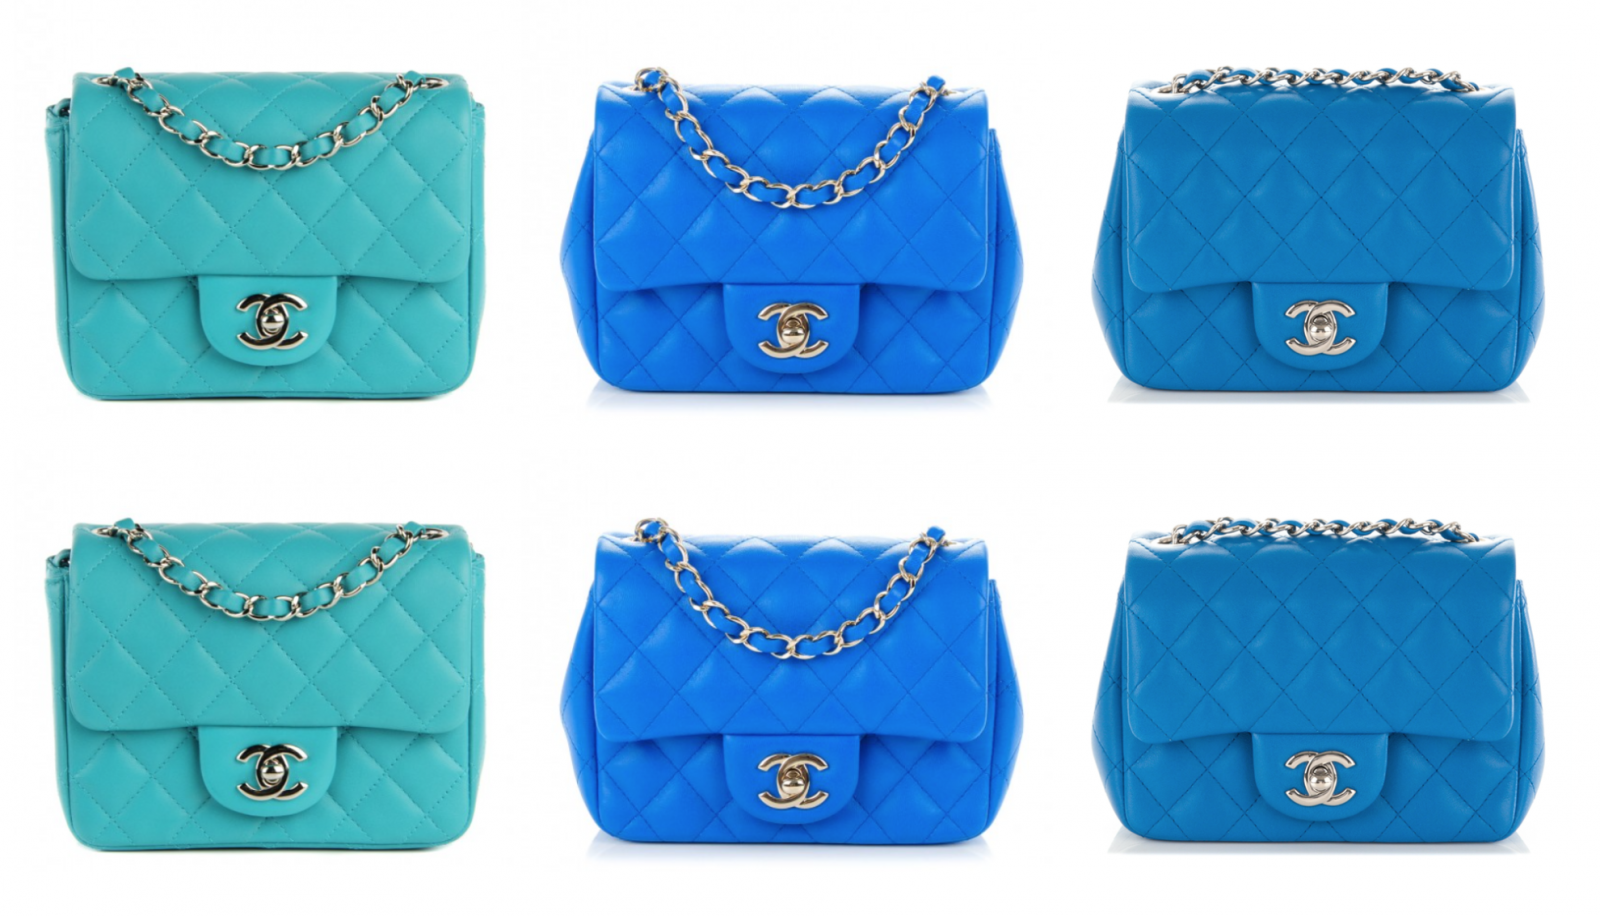 Pooey Puitton toy purse makers file lawsuit against Louis Vuitton